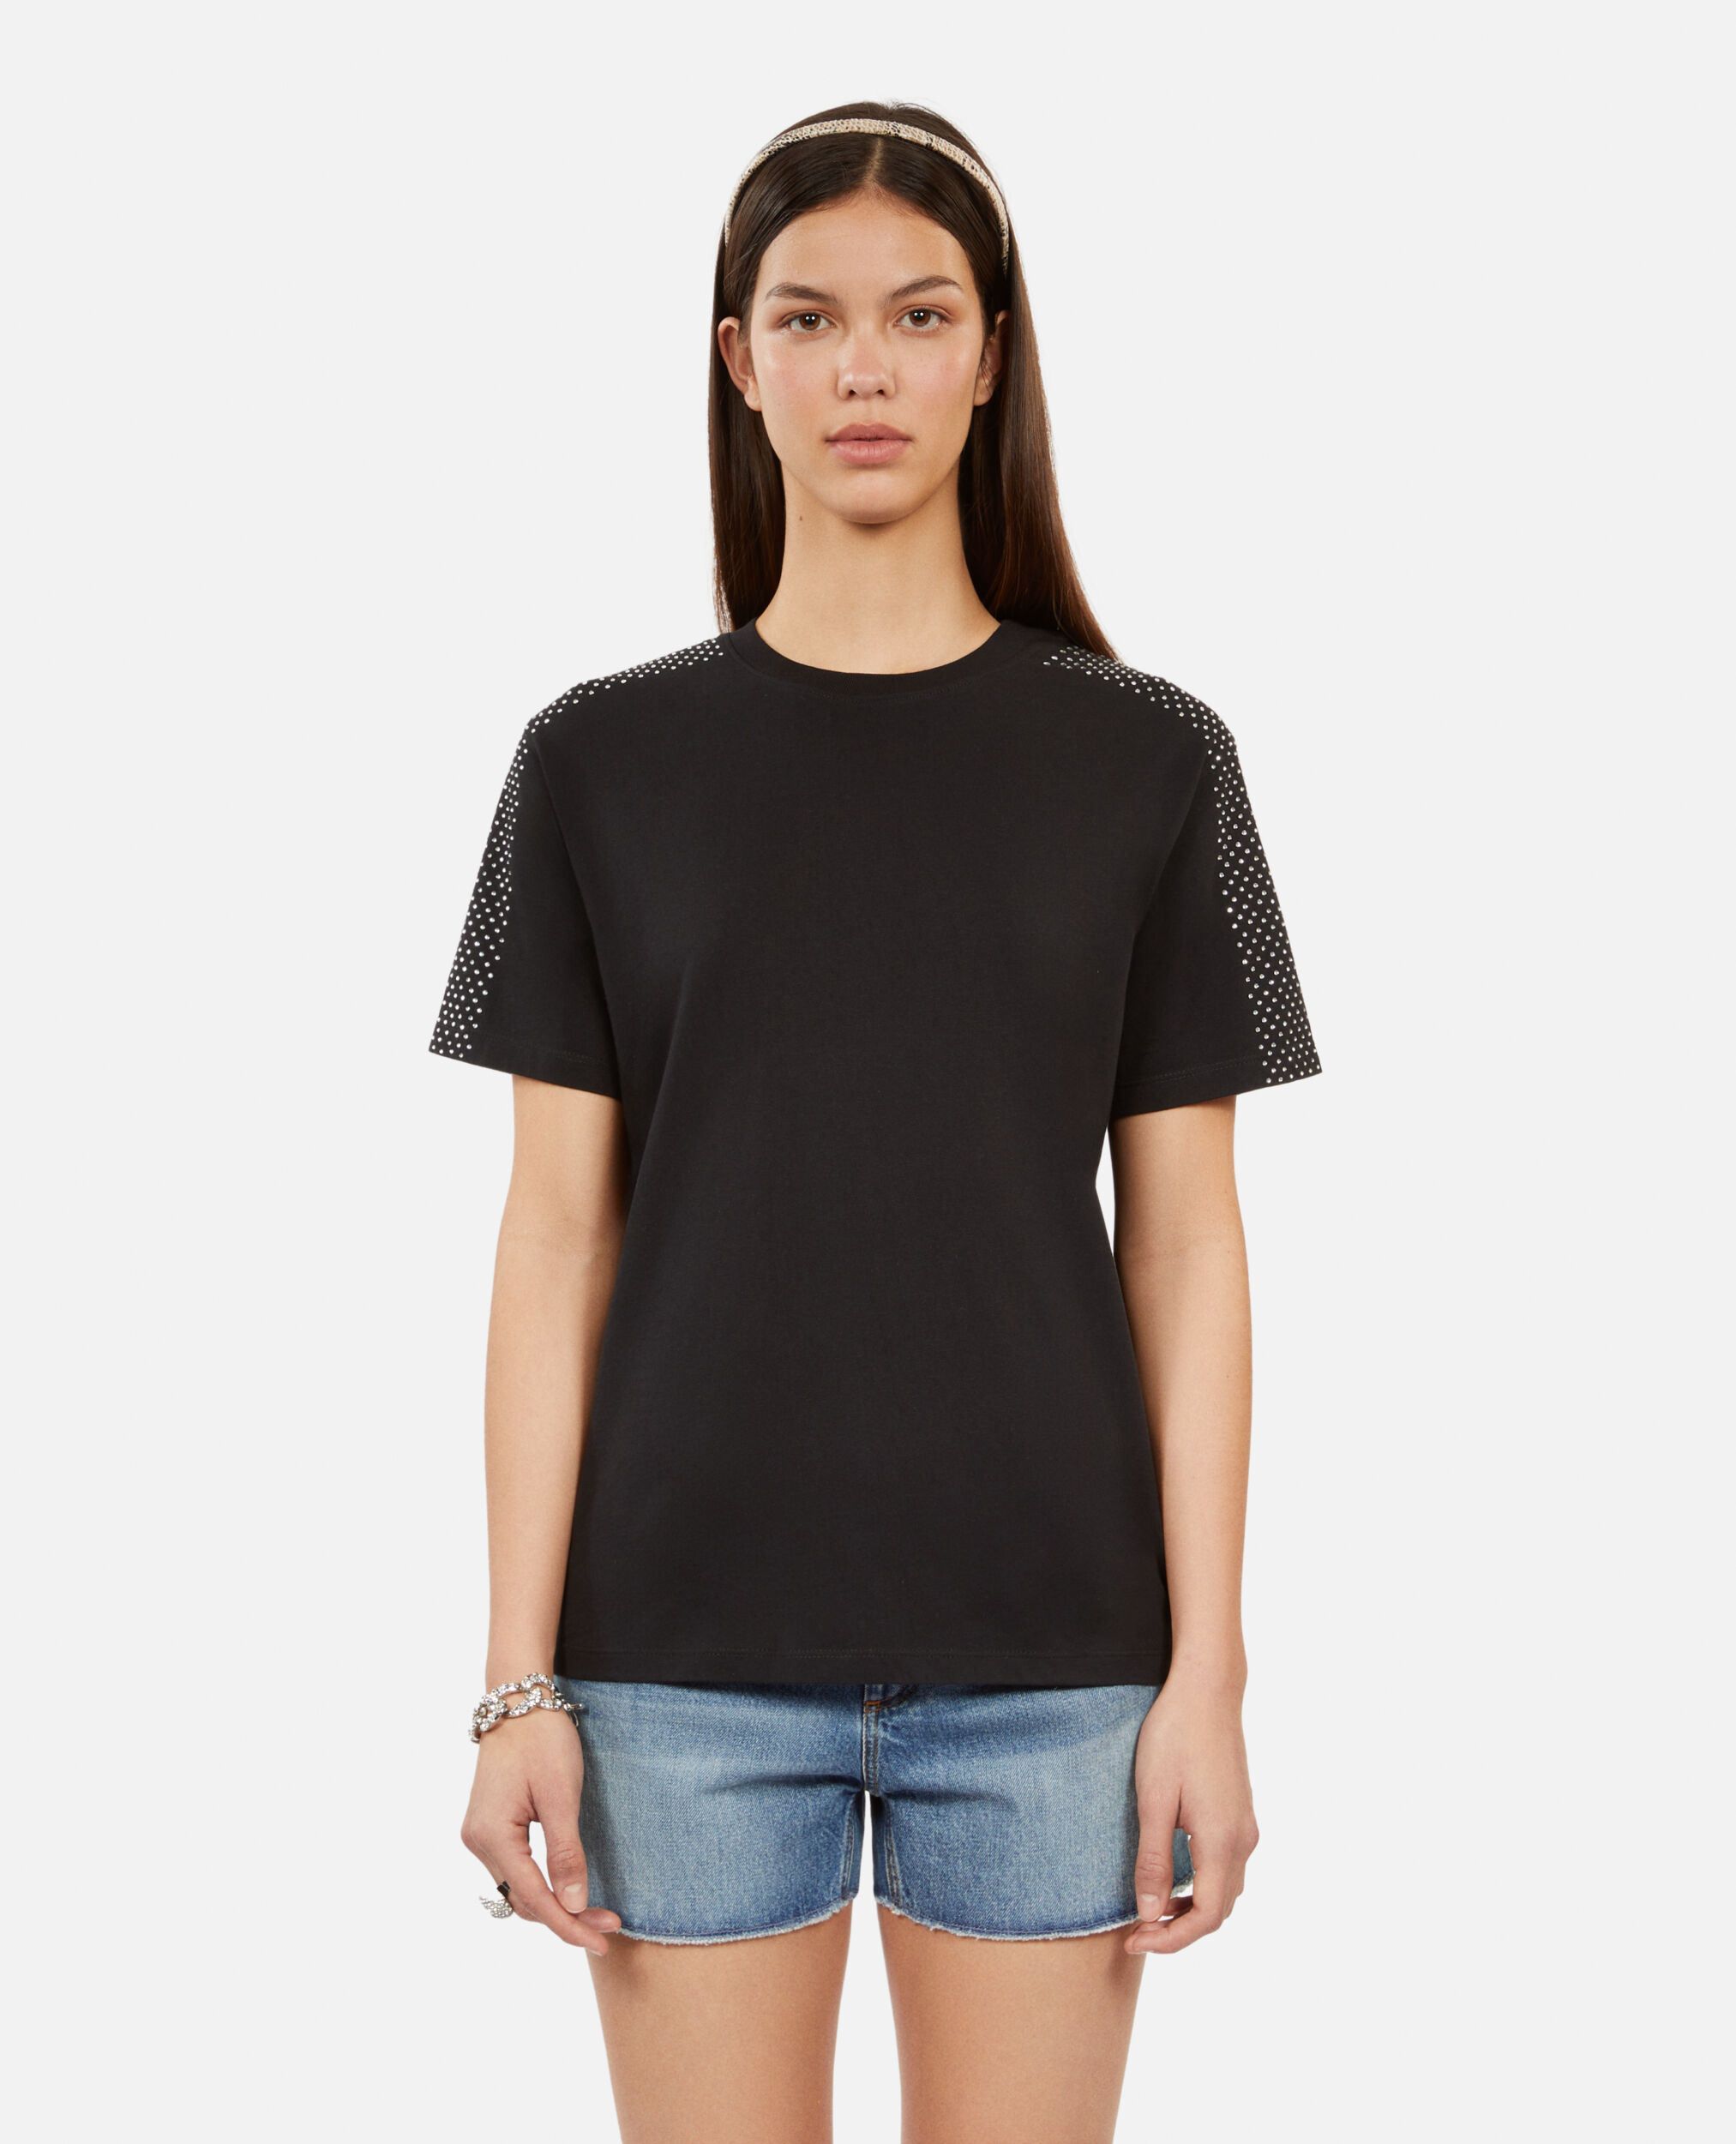 Schwarzes T-Shirt mit Strassbesatz für Damen, BLACK, hi-res image number null